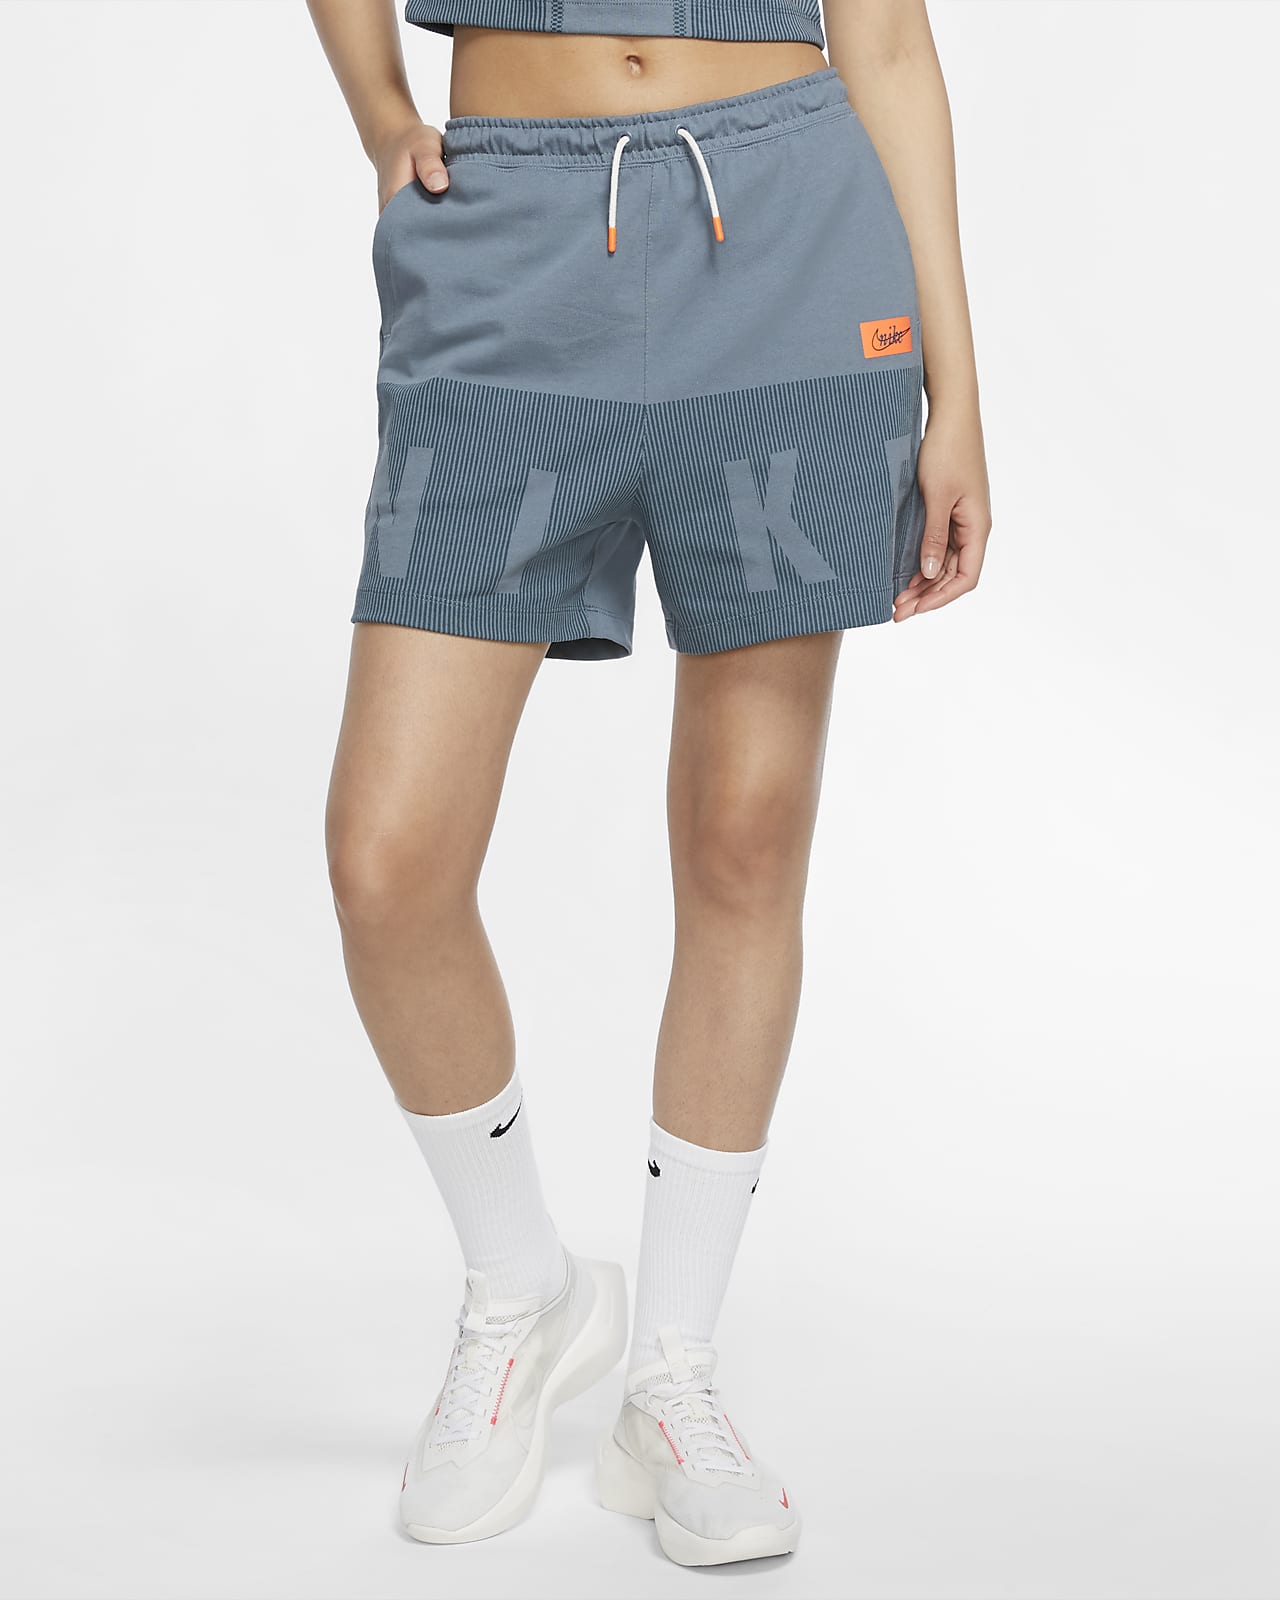 Nike Sportswear Women's Jersey Shorts 